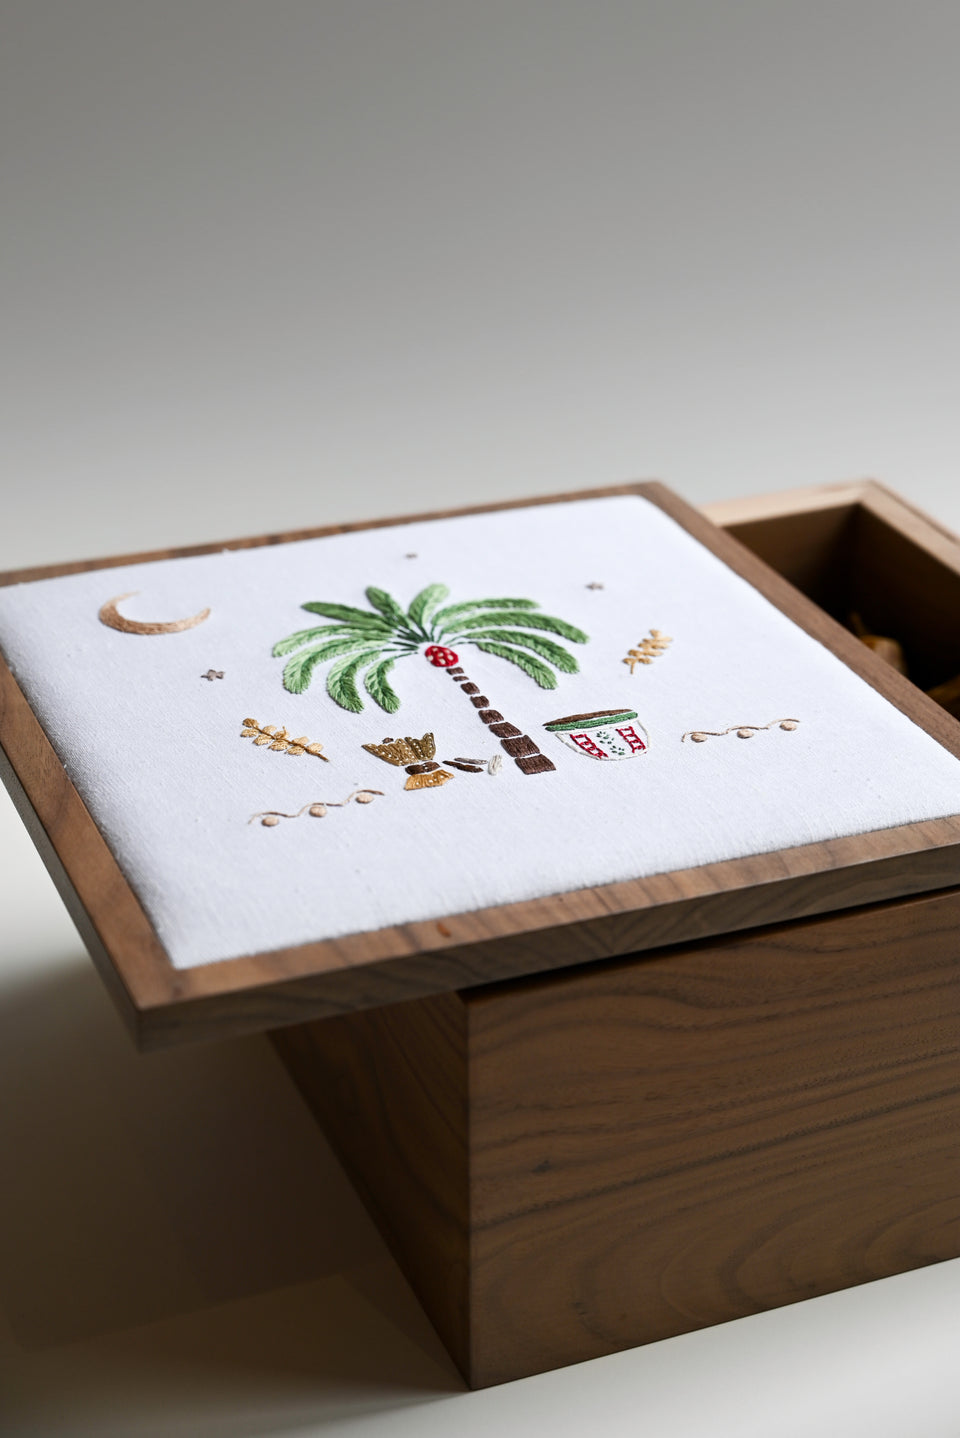 Saudi Culture Box - Concept 41